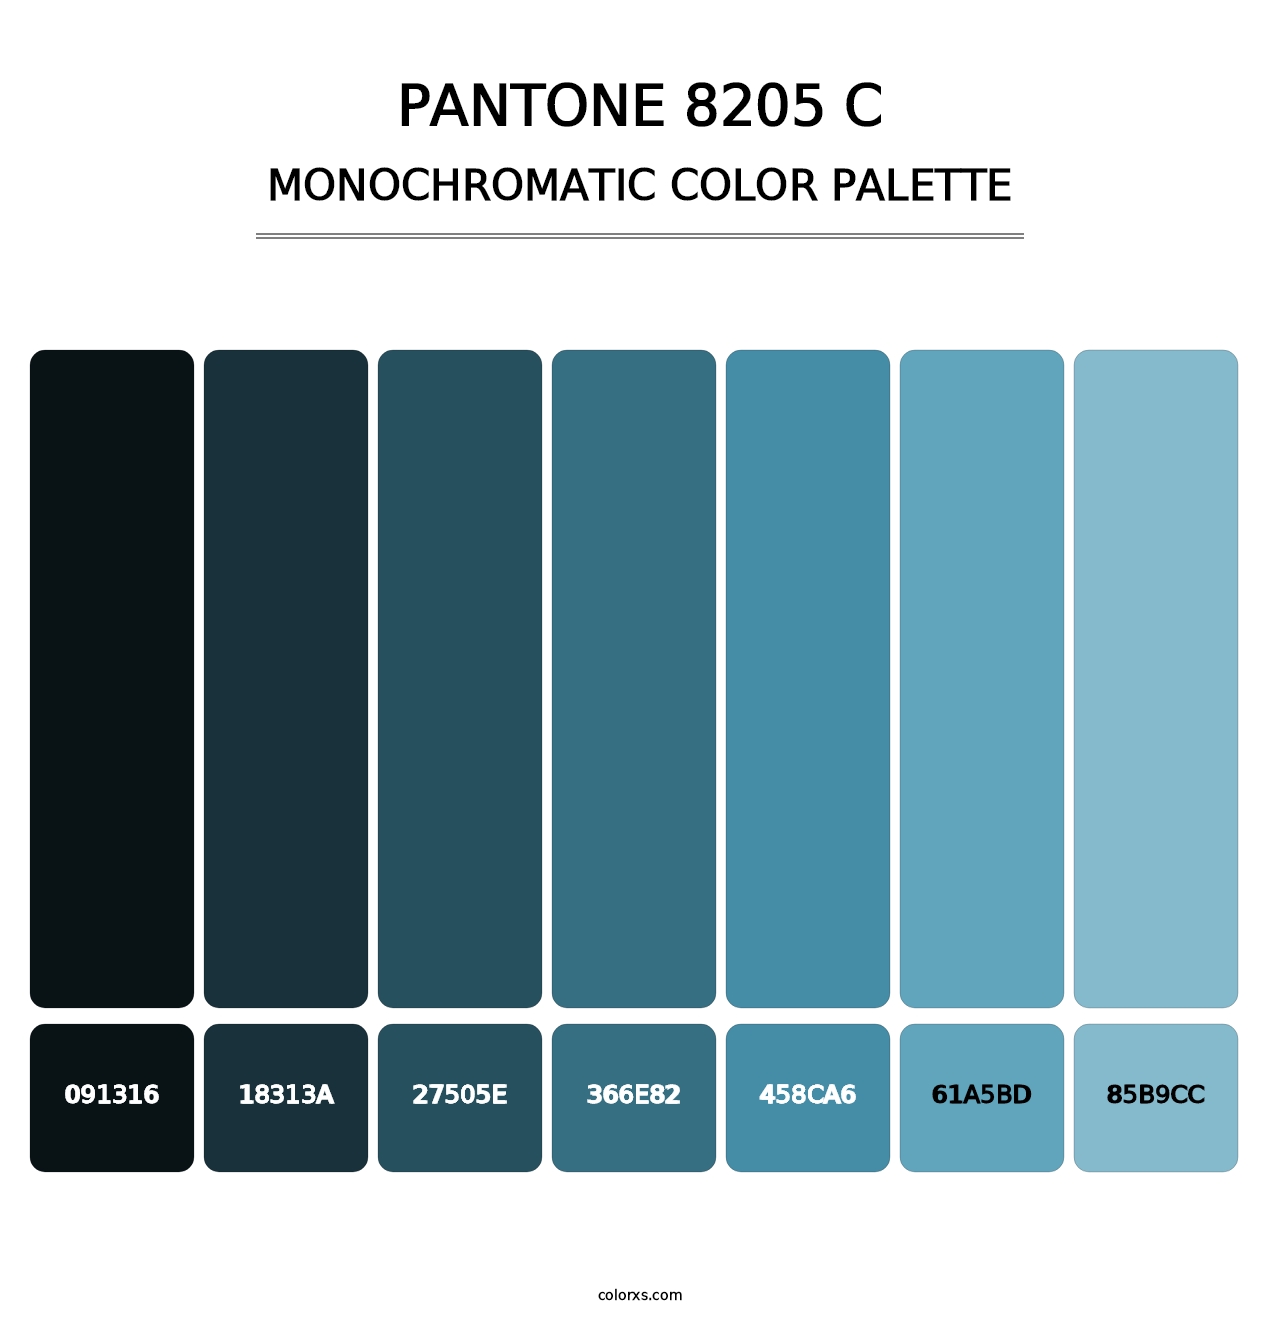 PANTONE 8205 C - Monochromatic Color Palette